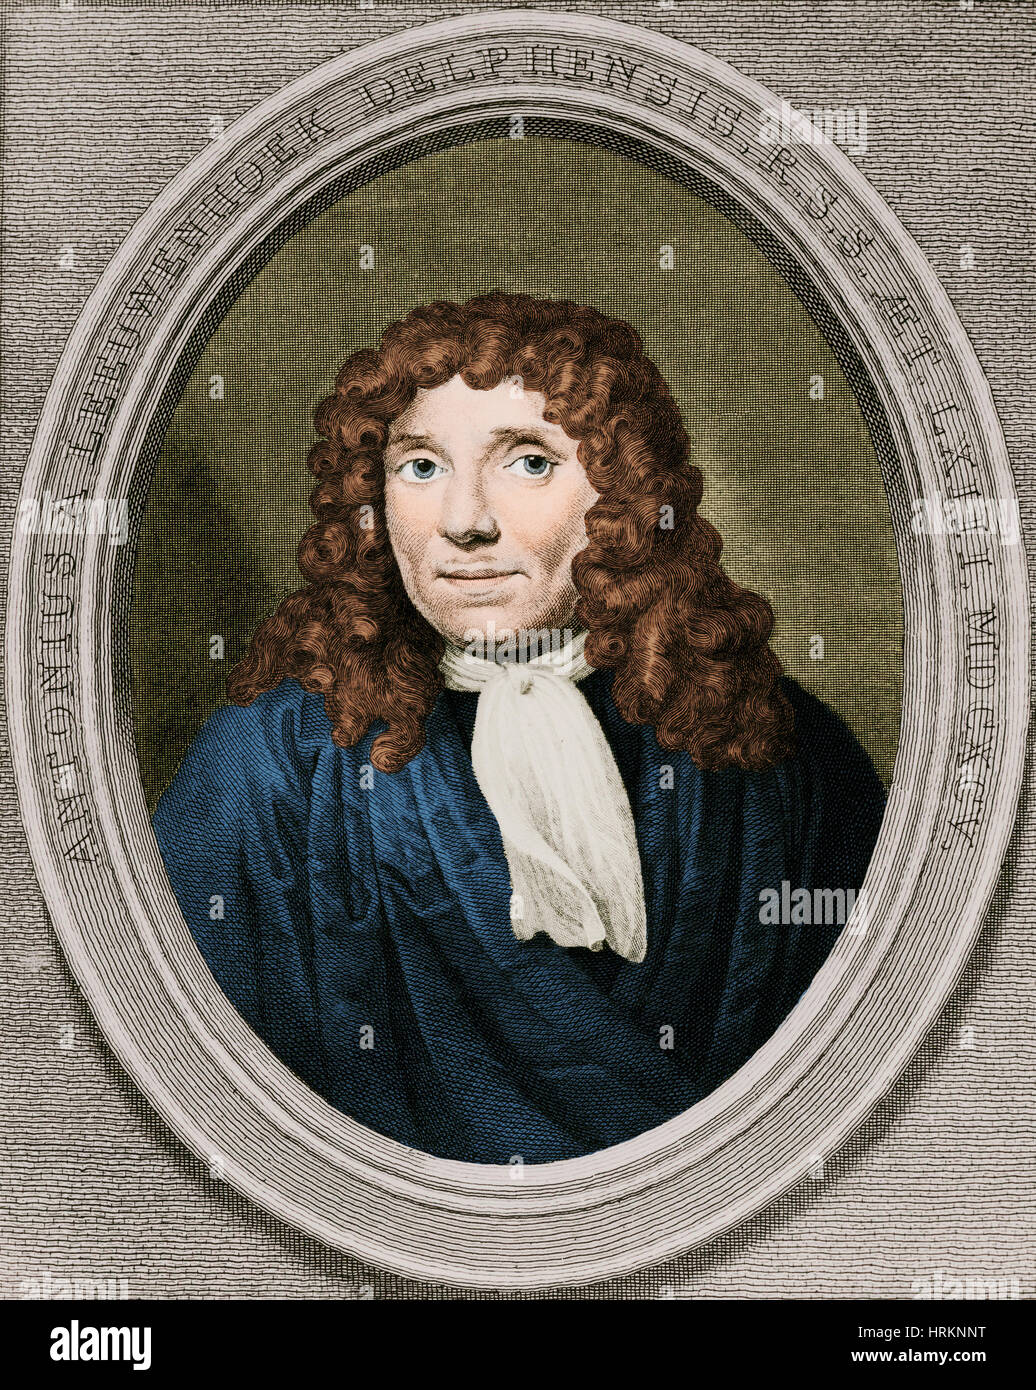 Anton Van Leeuwenhoek, Dutch Microbiologist Stock Photo